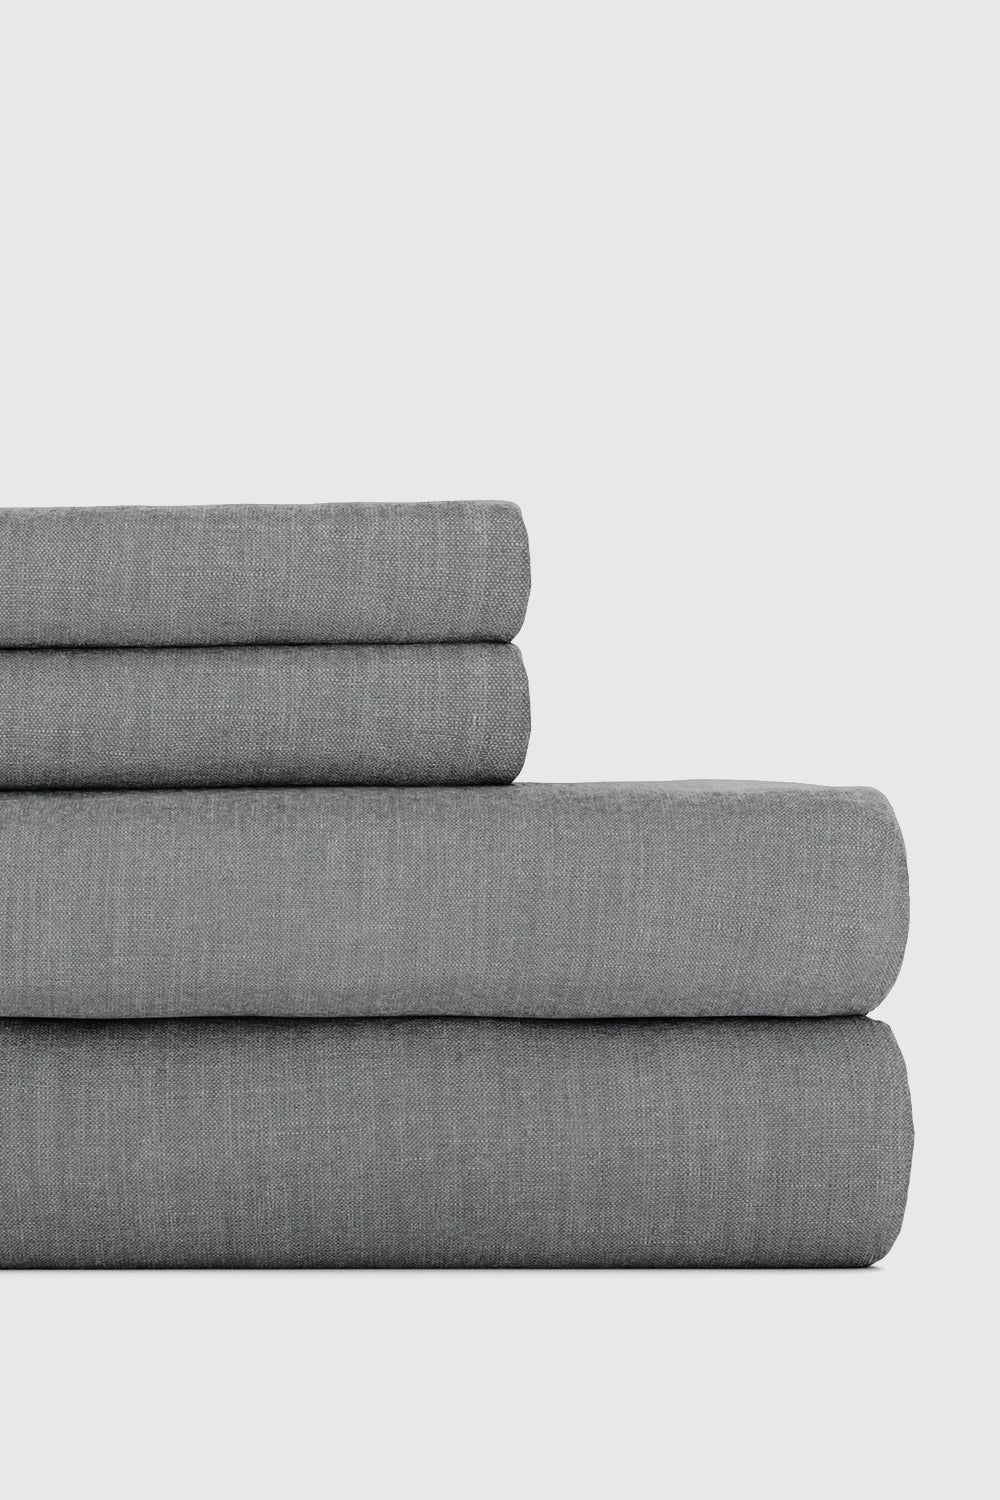 Gray Bamboo/Linen Sheet Set